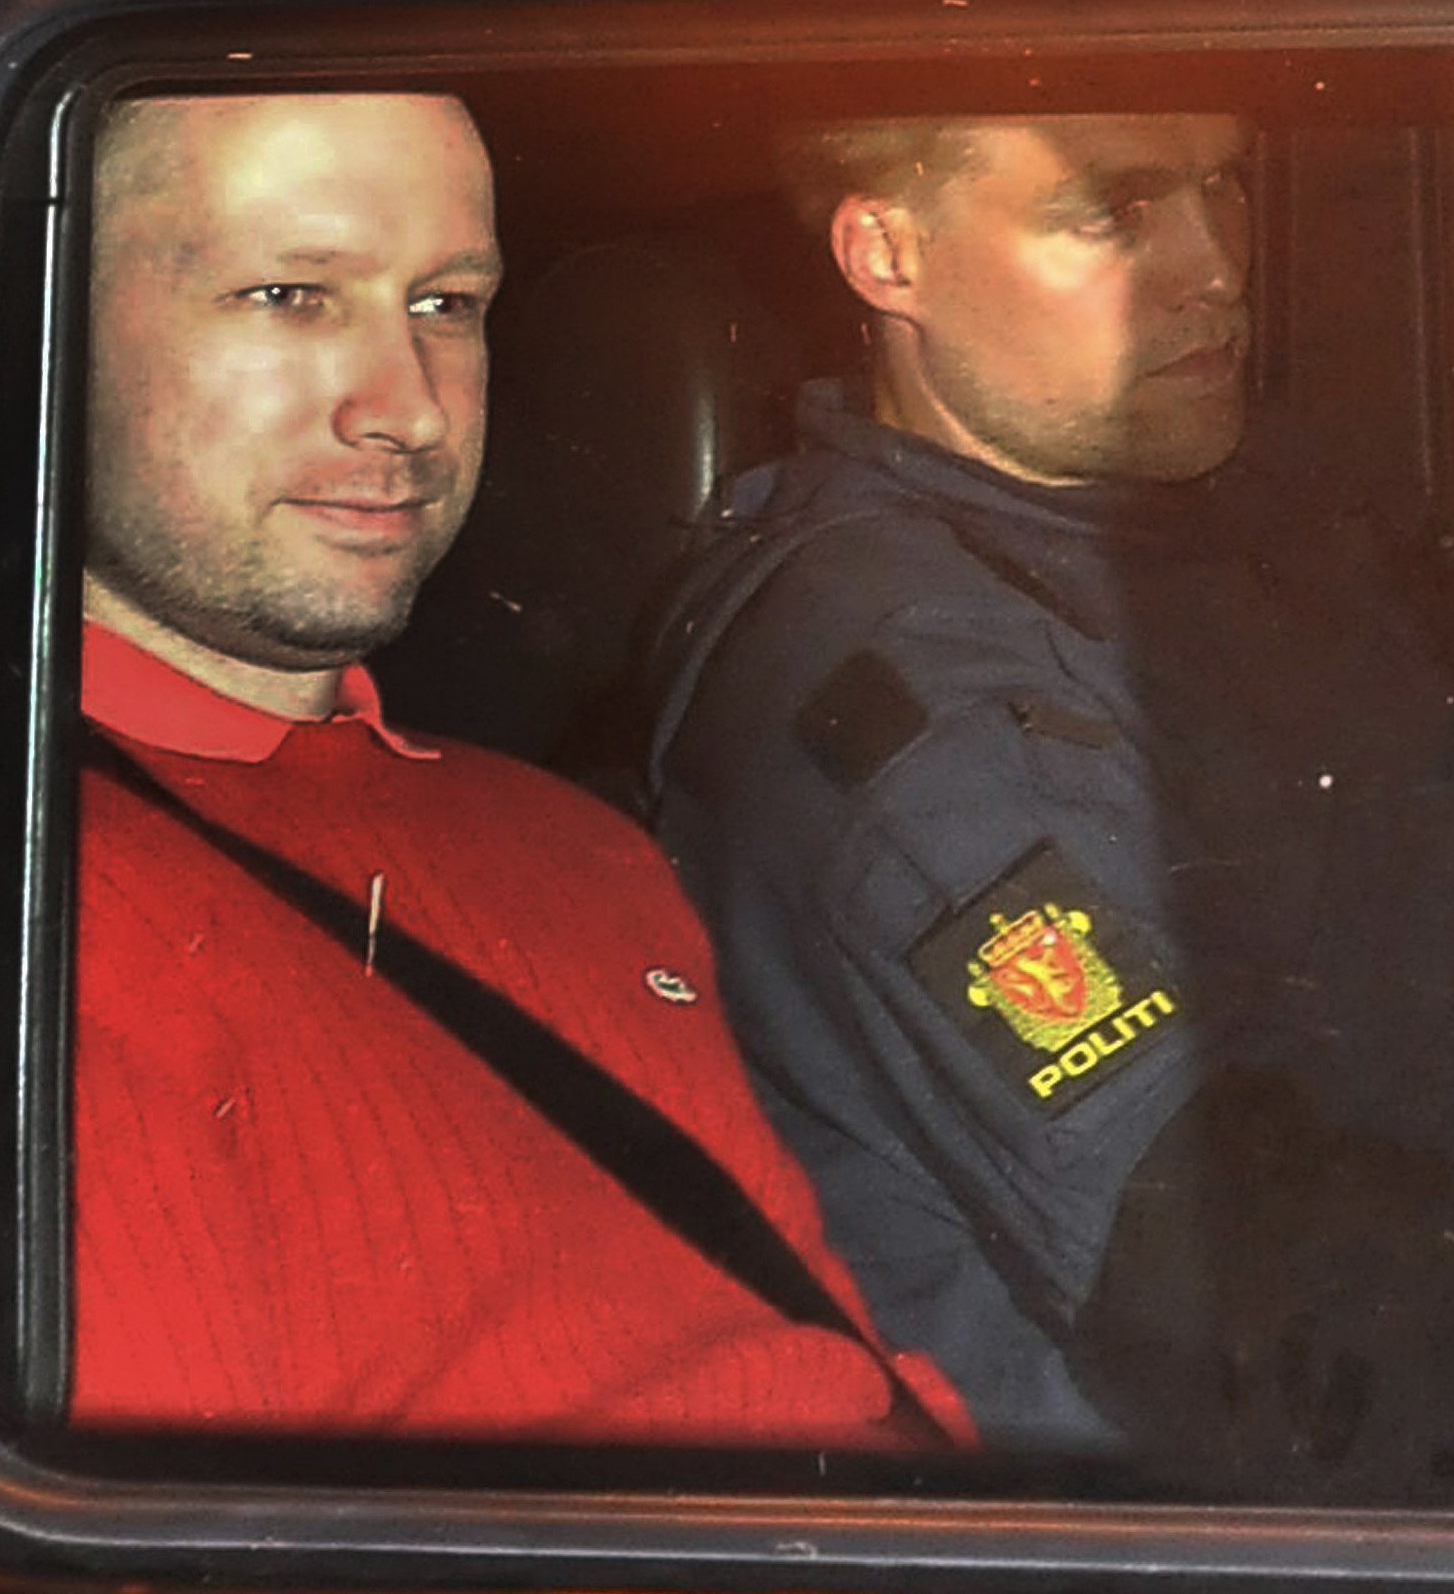 Terrordåd, Oslo, Anders Behring Breivik, Utøya, Bombattentat, Häktningsförhandling, Norge